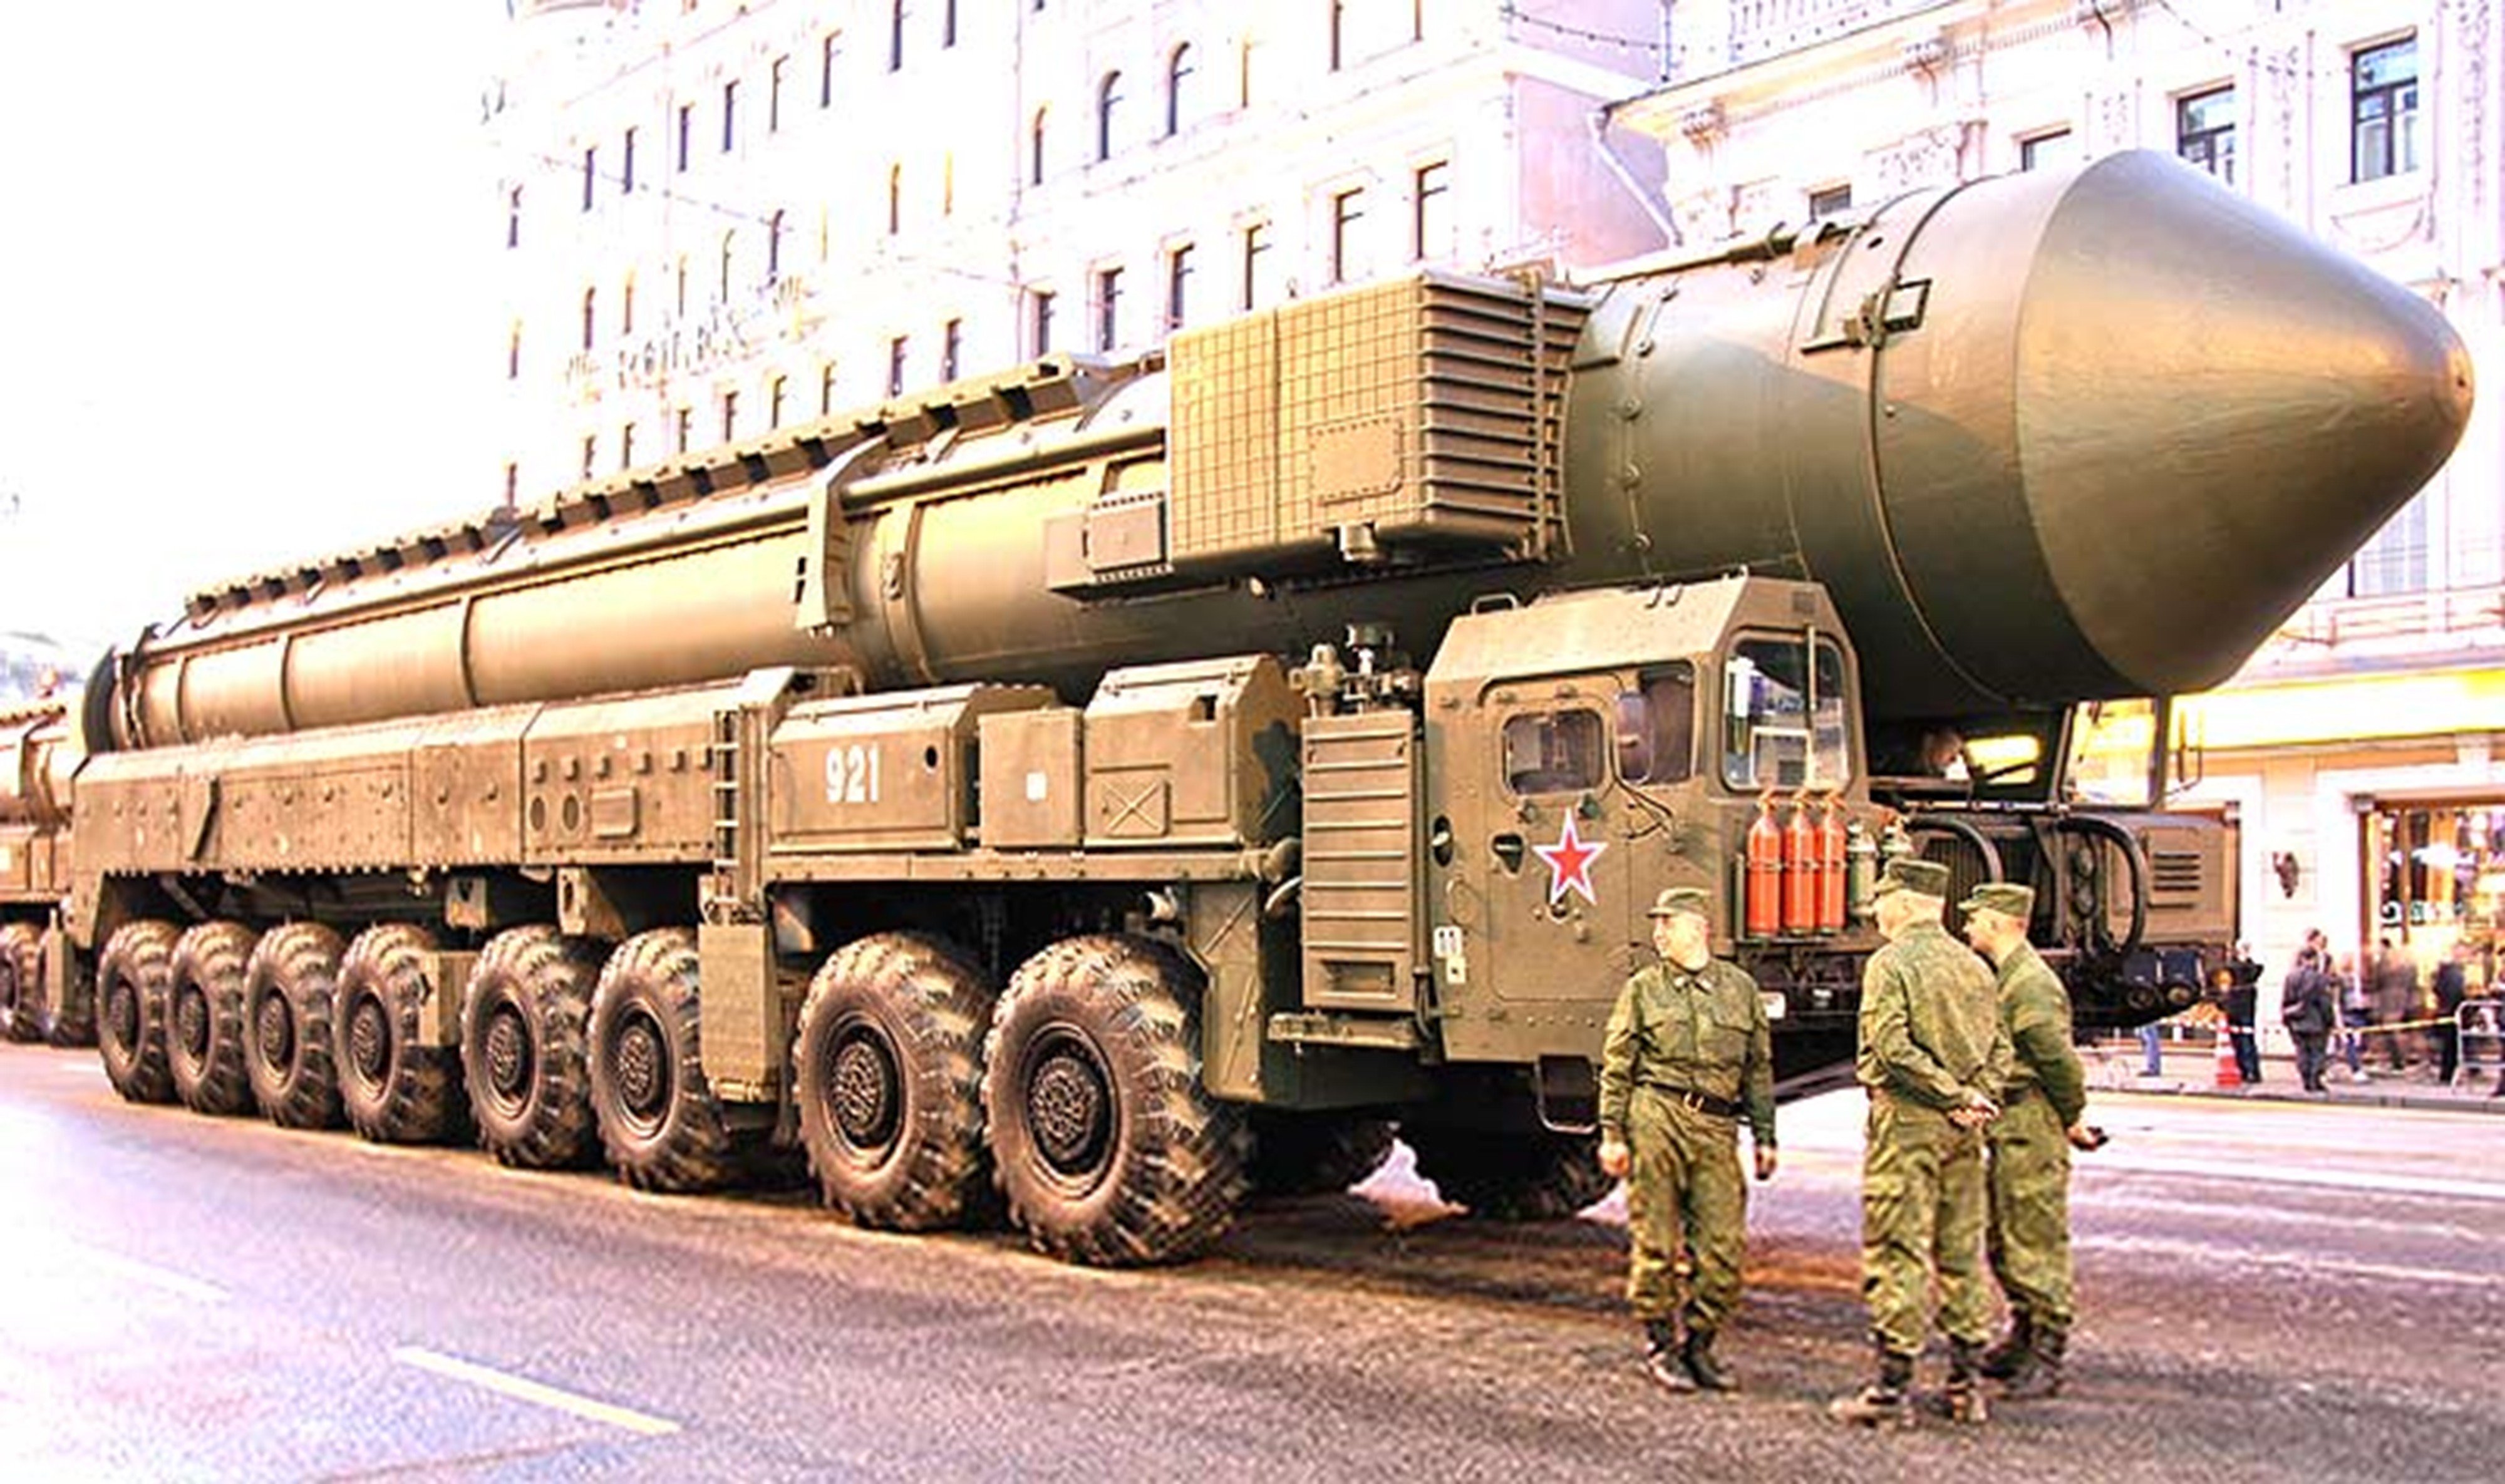 Есть бомба сильнее. РТ-2пм2 «Тополь-м». РТ-2пм «Тополь» (SS-25);. РТ-2пм2 «Тополь-м» (SS-27). Ядерная ракета РС-24 «Ярс».